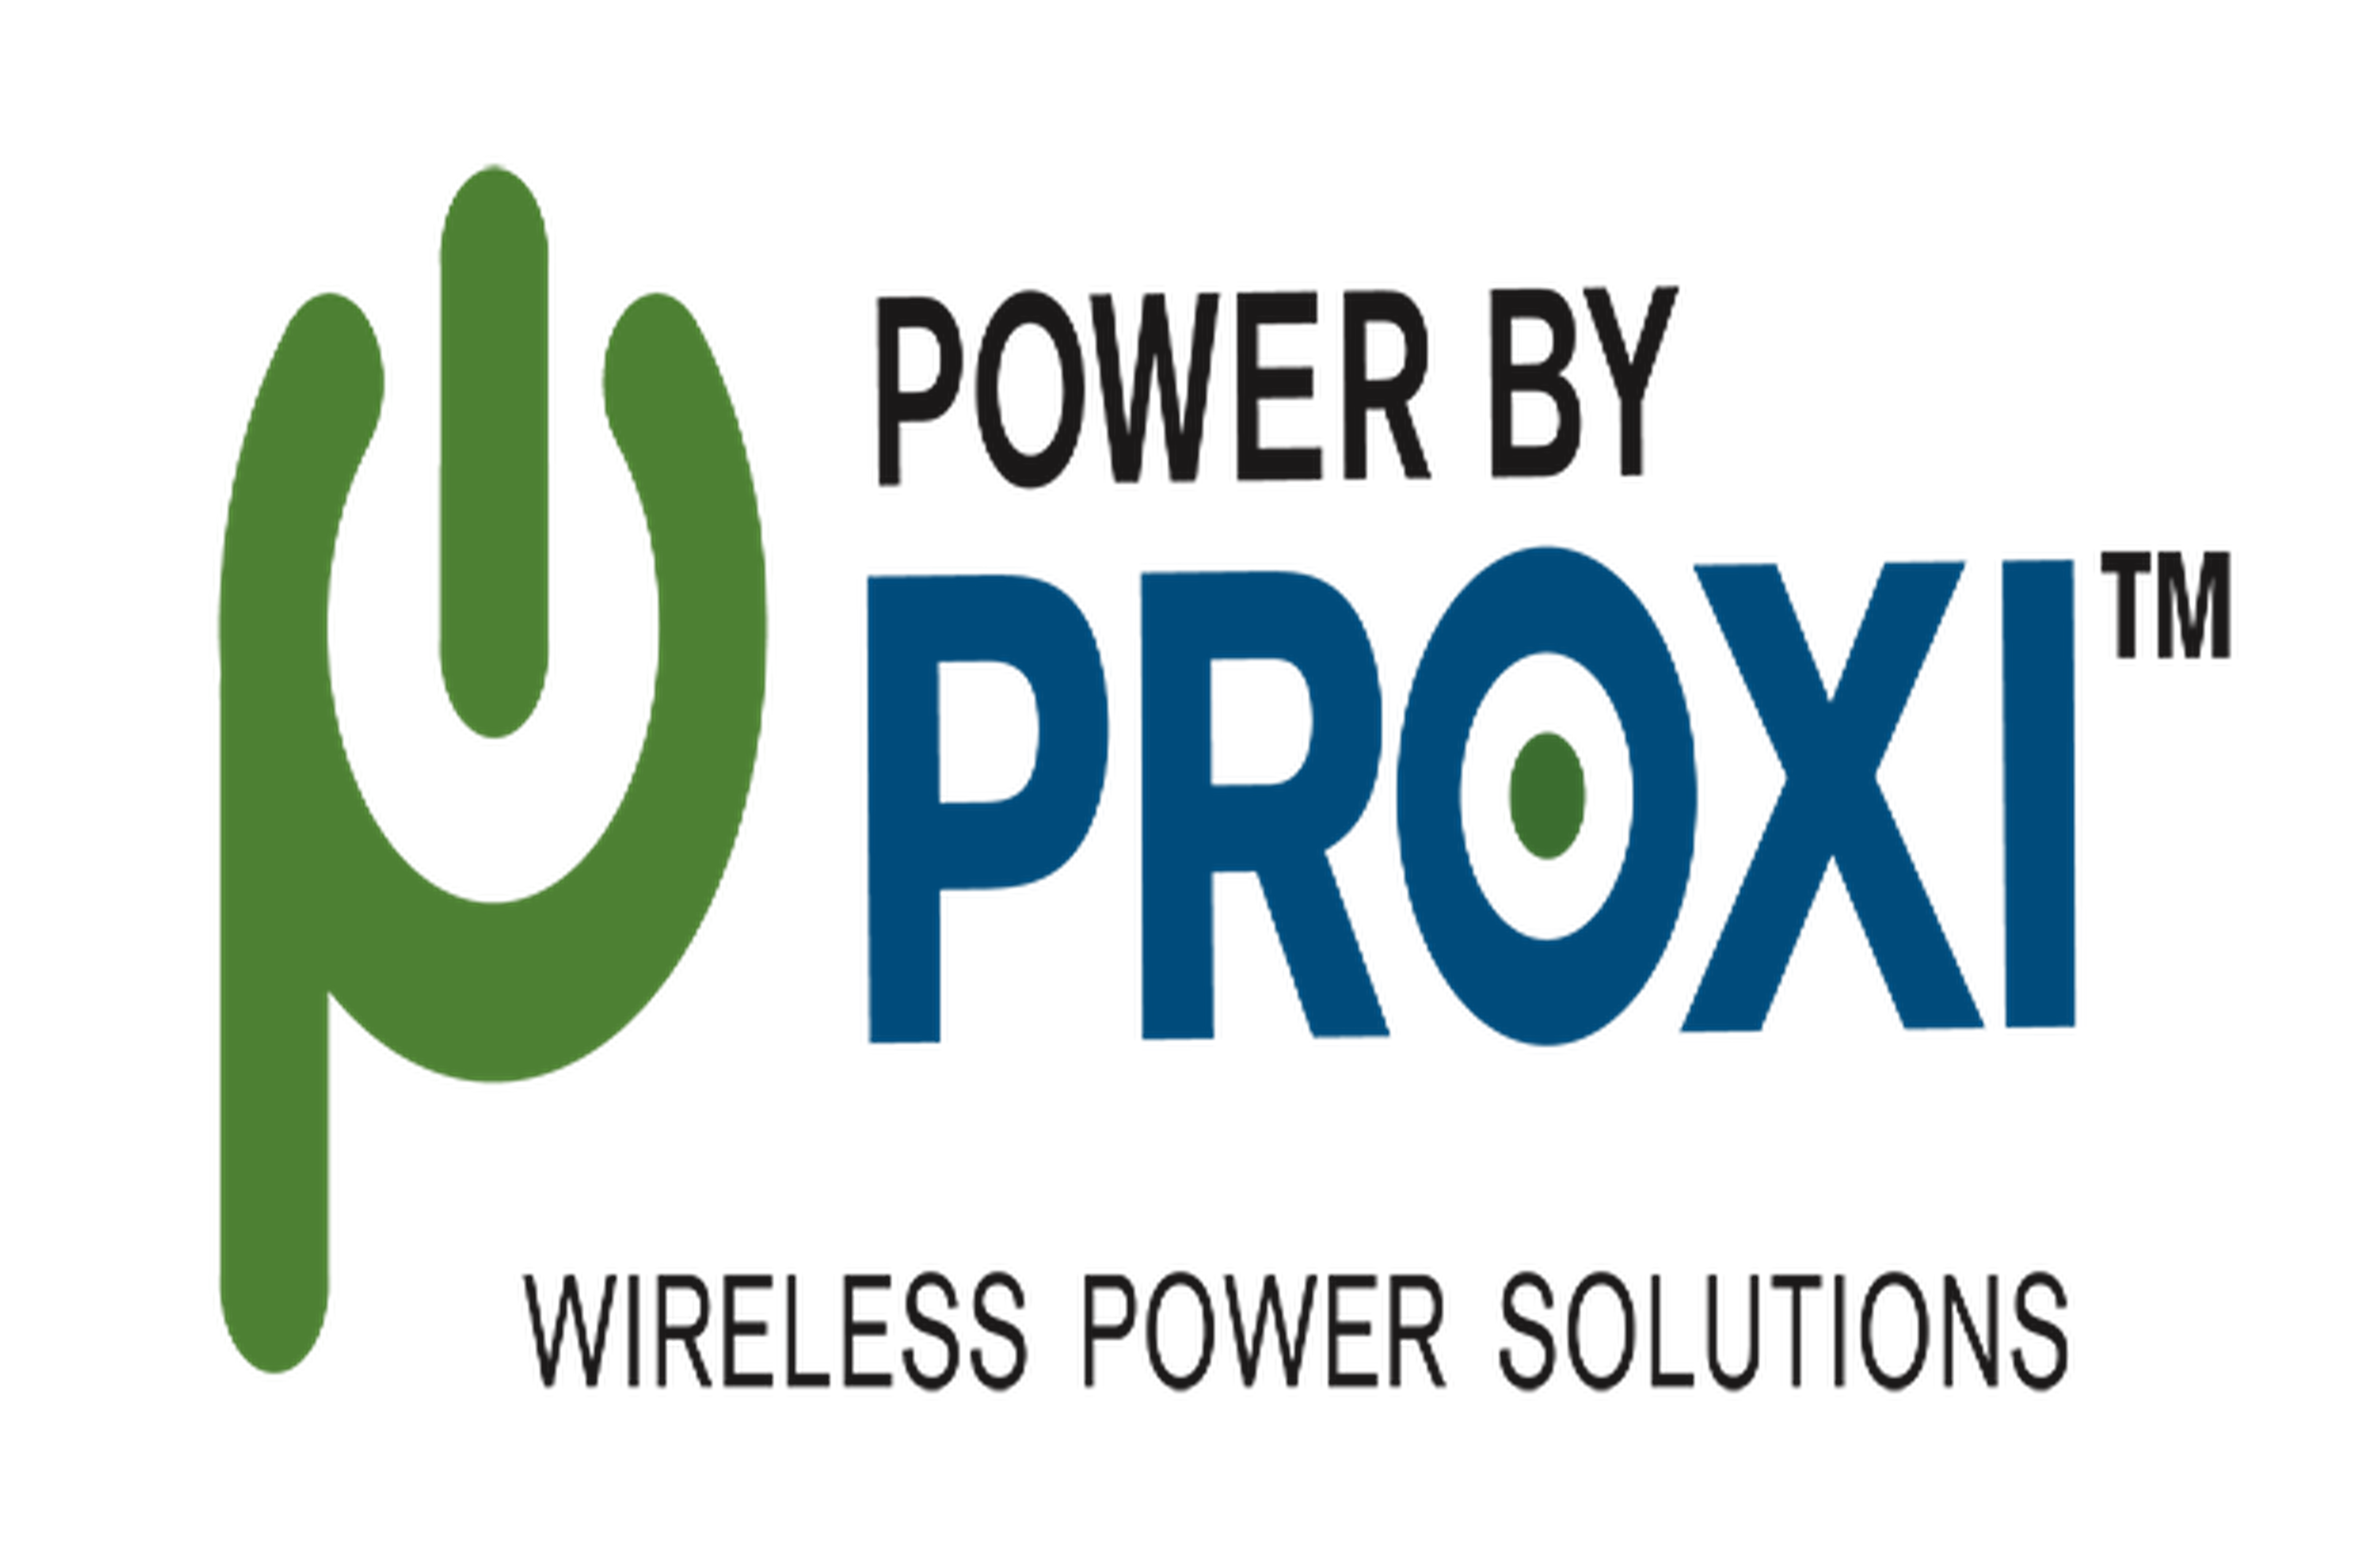 Samsung invierte 4 millones de dólares en PowerbyProxi